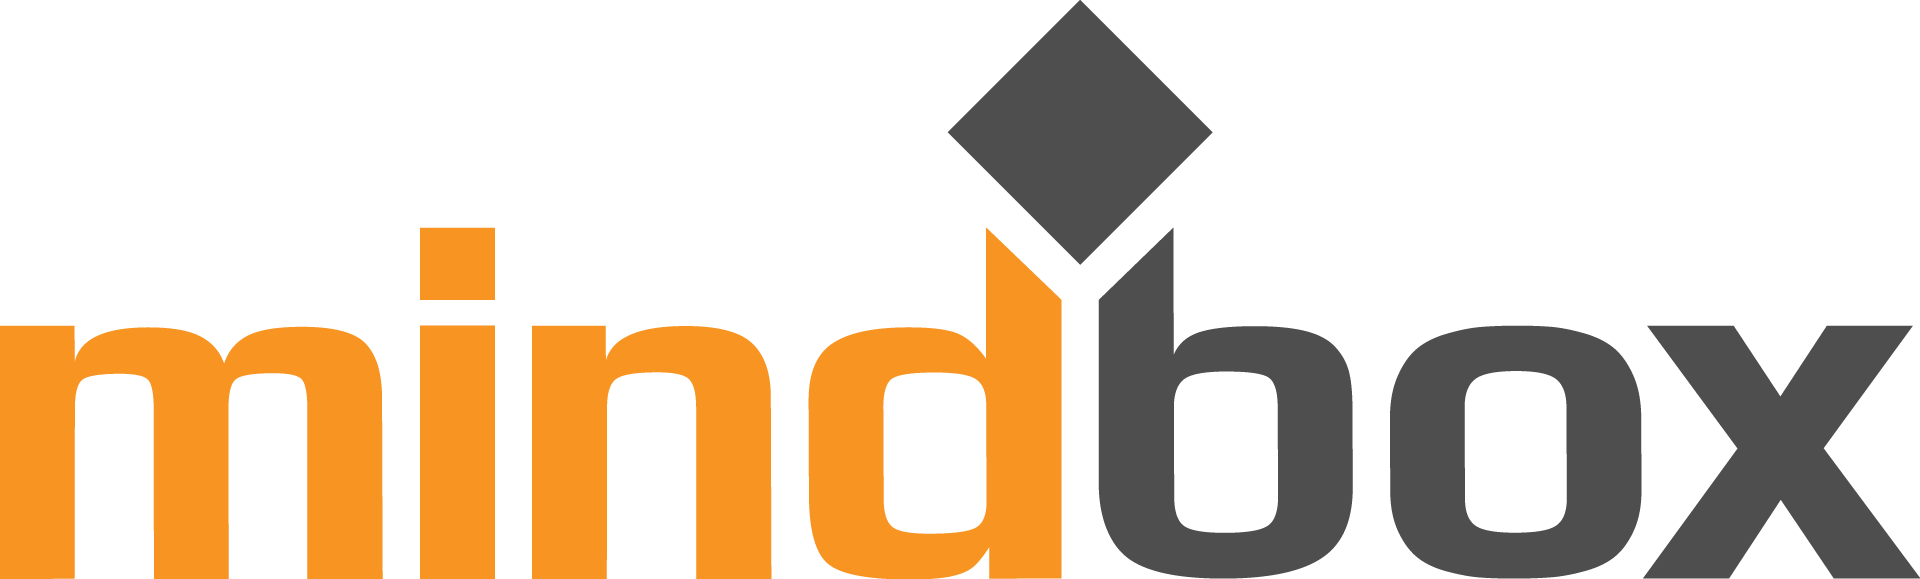 Company logo Mindbox